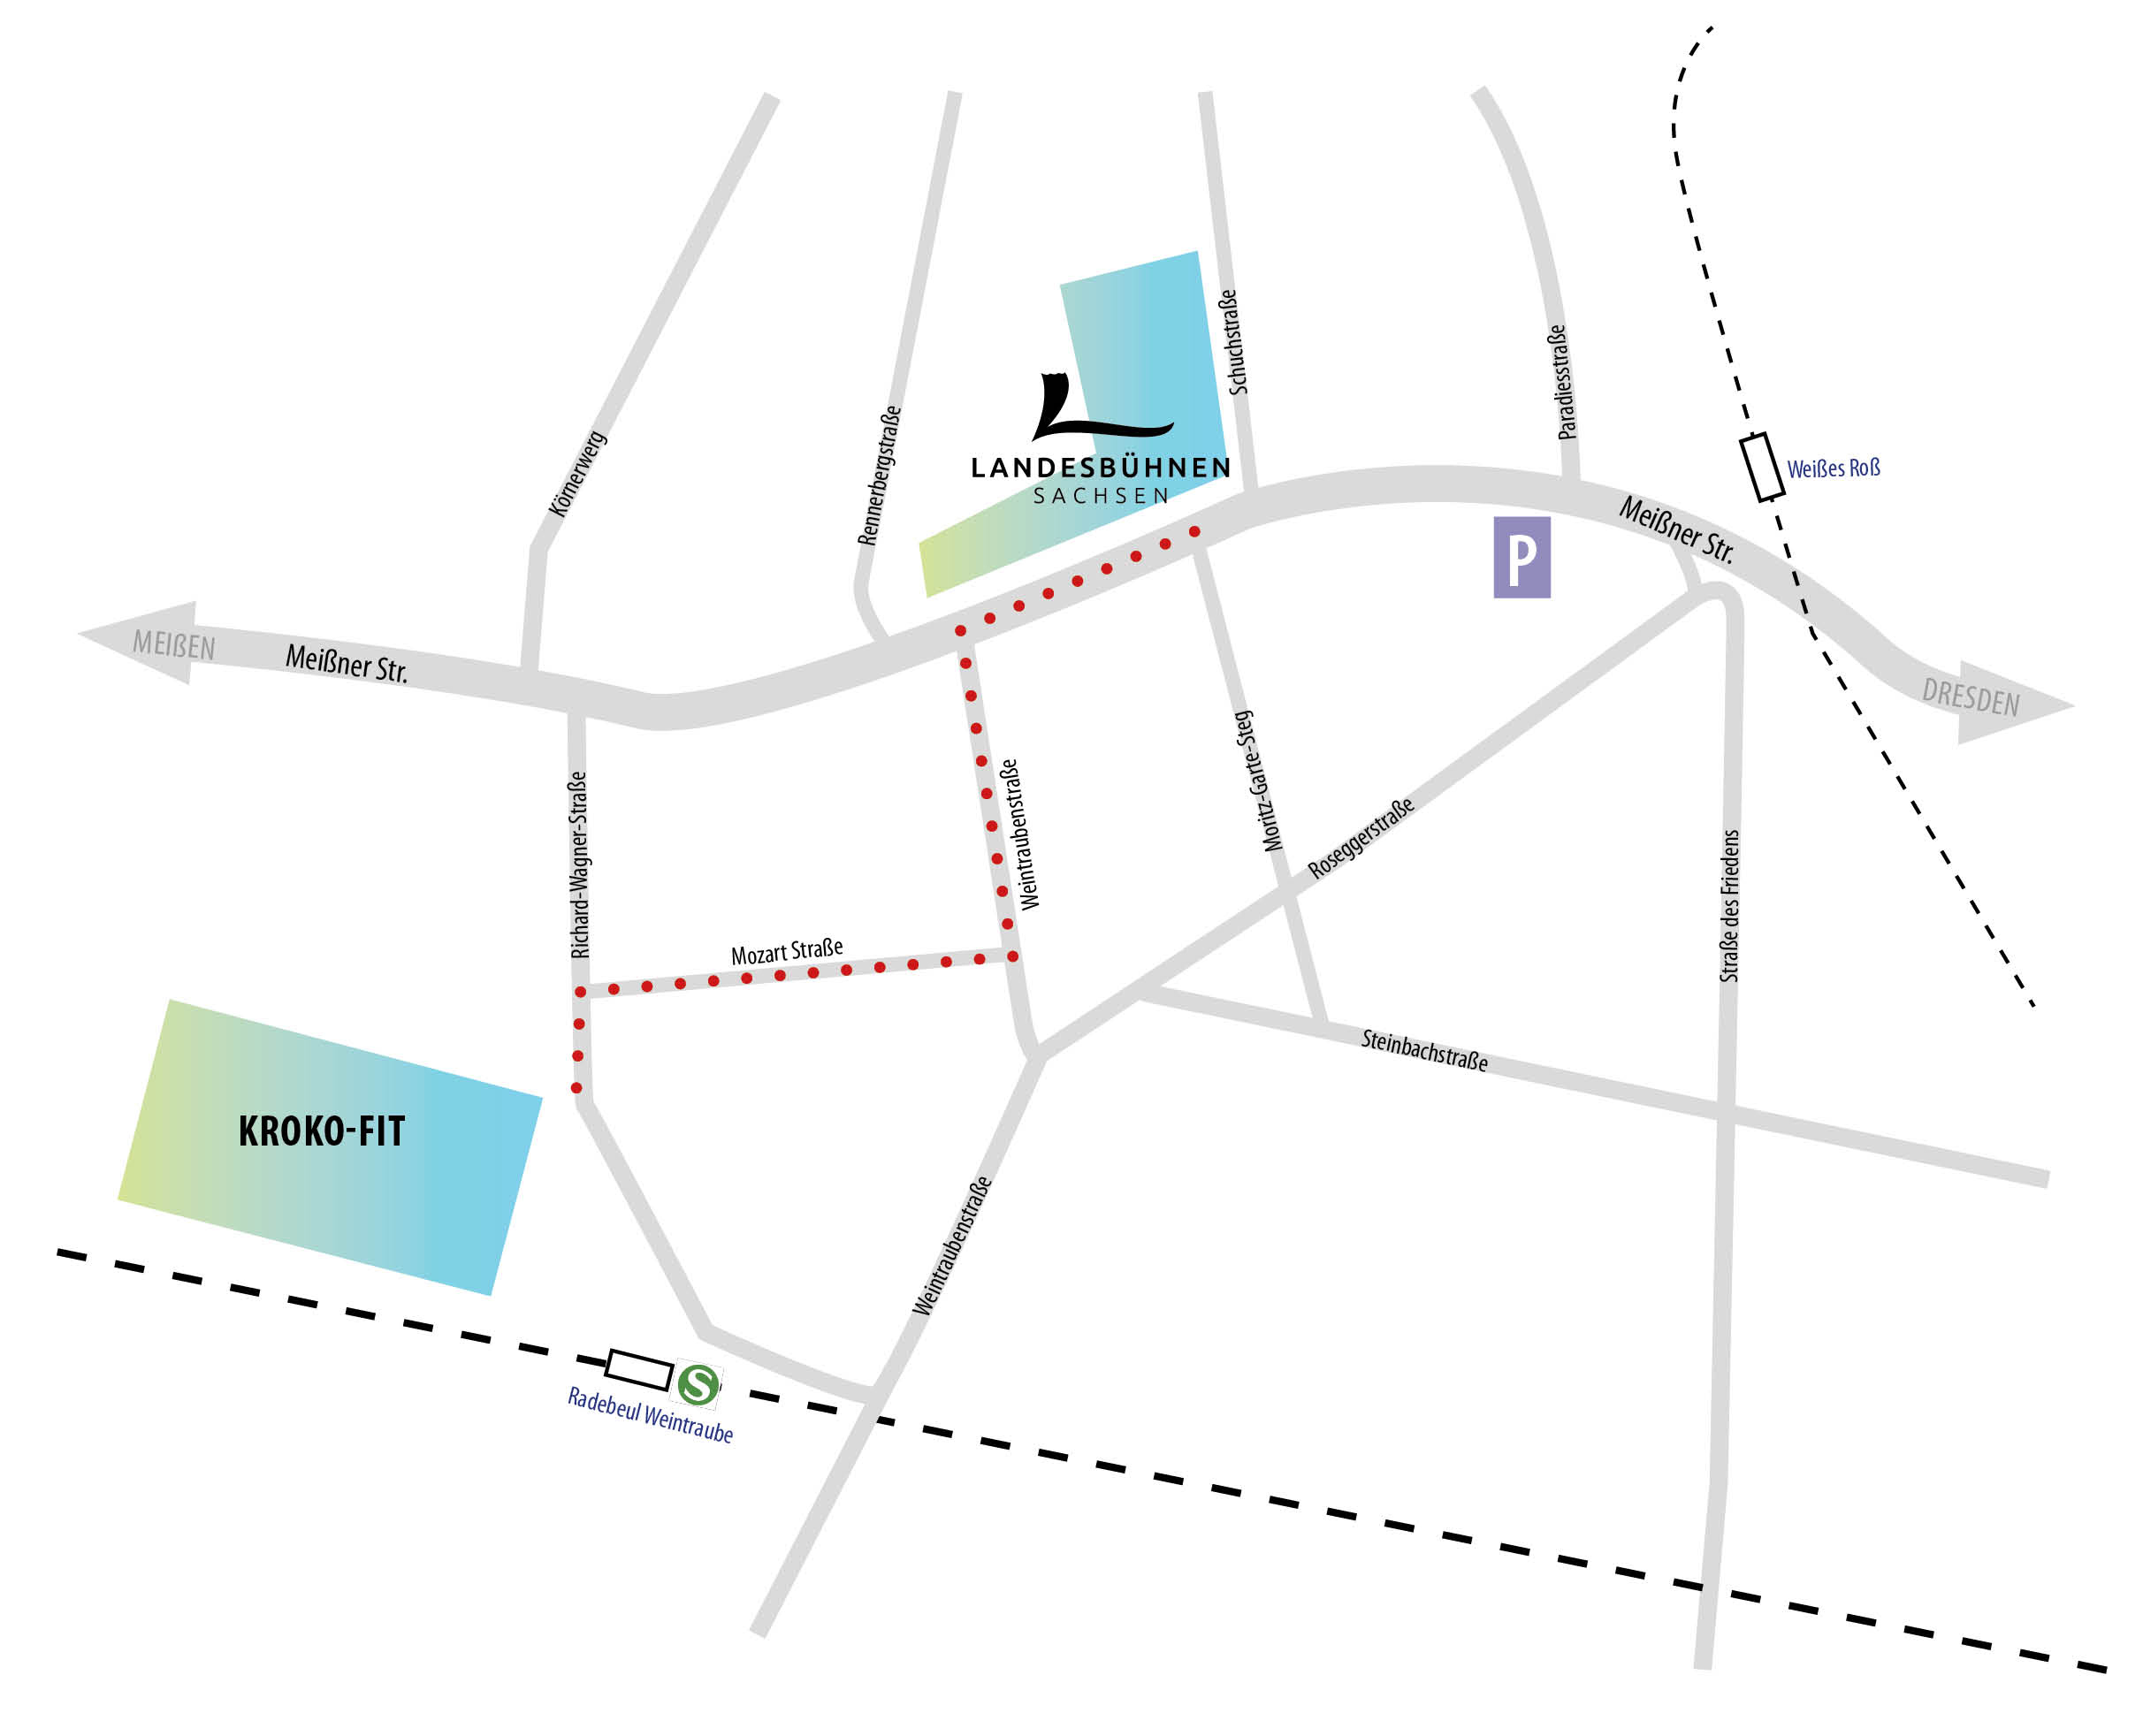 Karte_Kroko-Fit_Testzentraum nahe Landesbuehnen-sachsen_Okt 2021